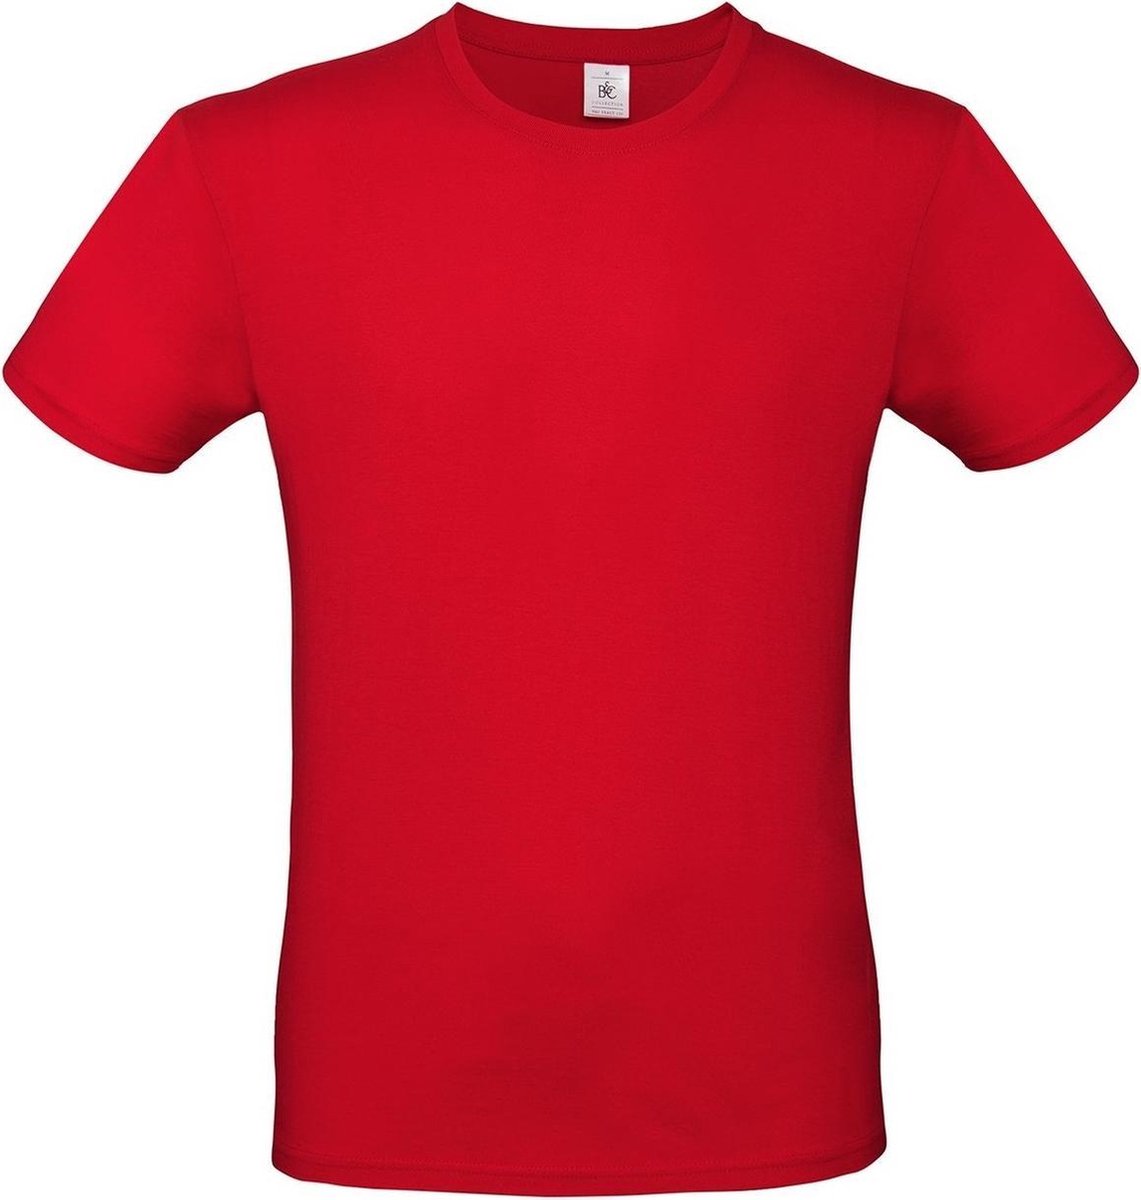 Set van 2x stuks rood basic t-shirt met ronde hals voor heren - katoen - 145 grams - rode shirts / kleding, maat: XL (54)